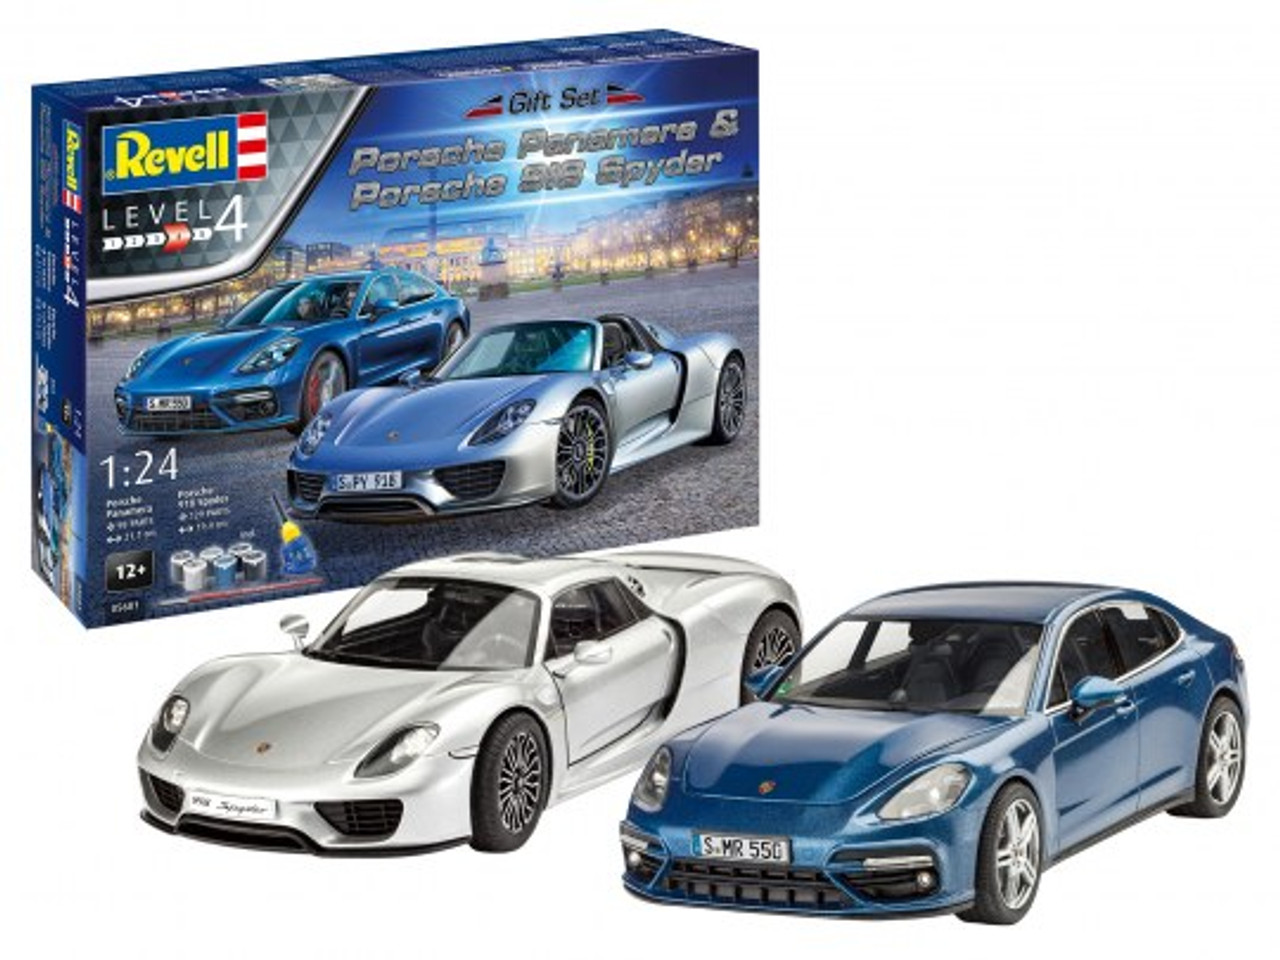 Revell 05681 1/24 Gift set Porsche Plastic Model Kit